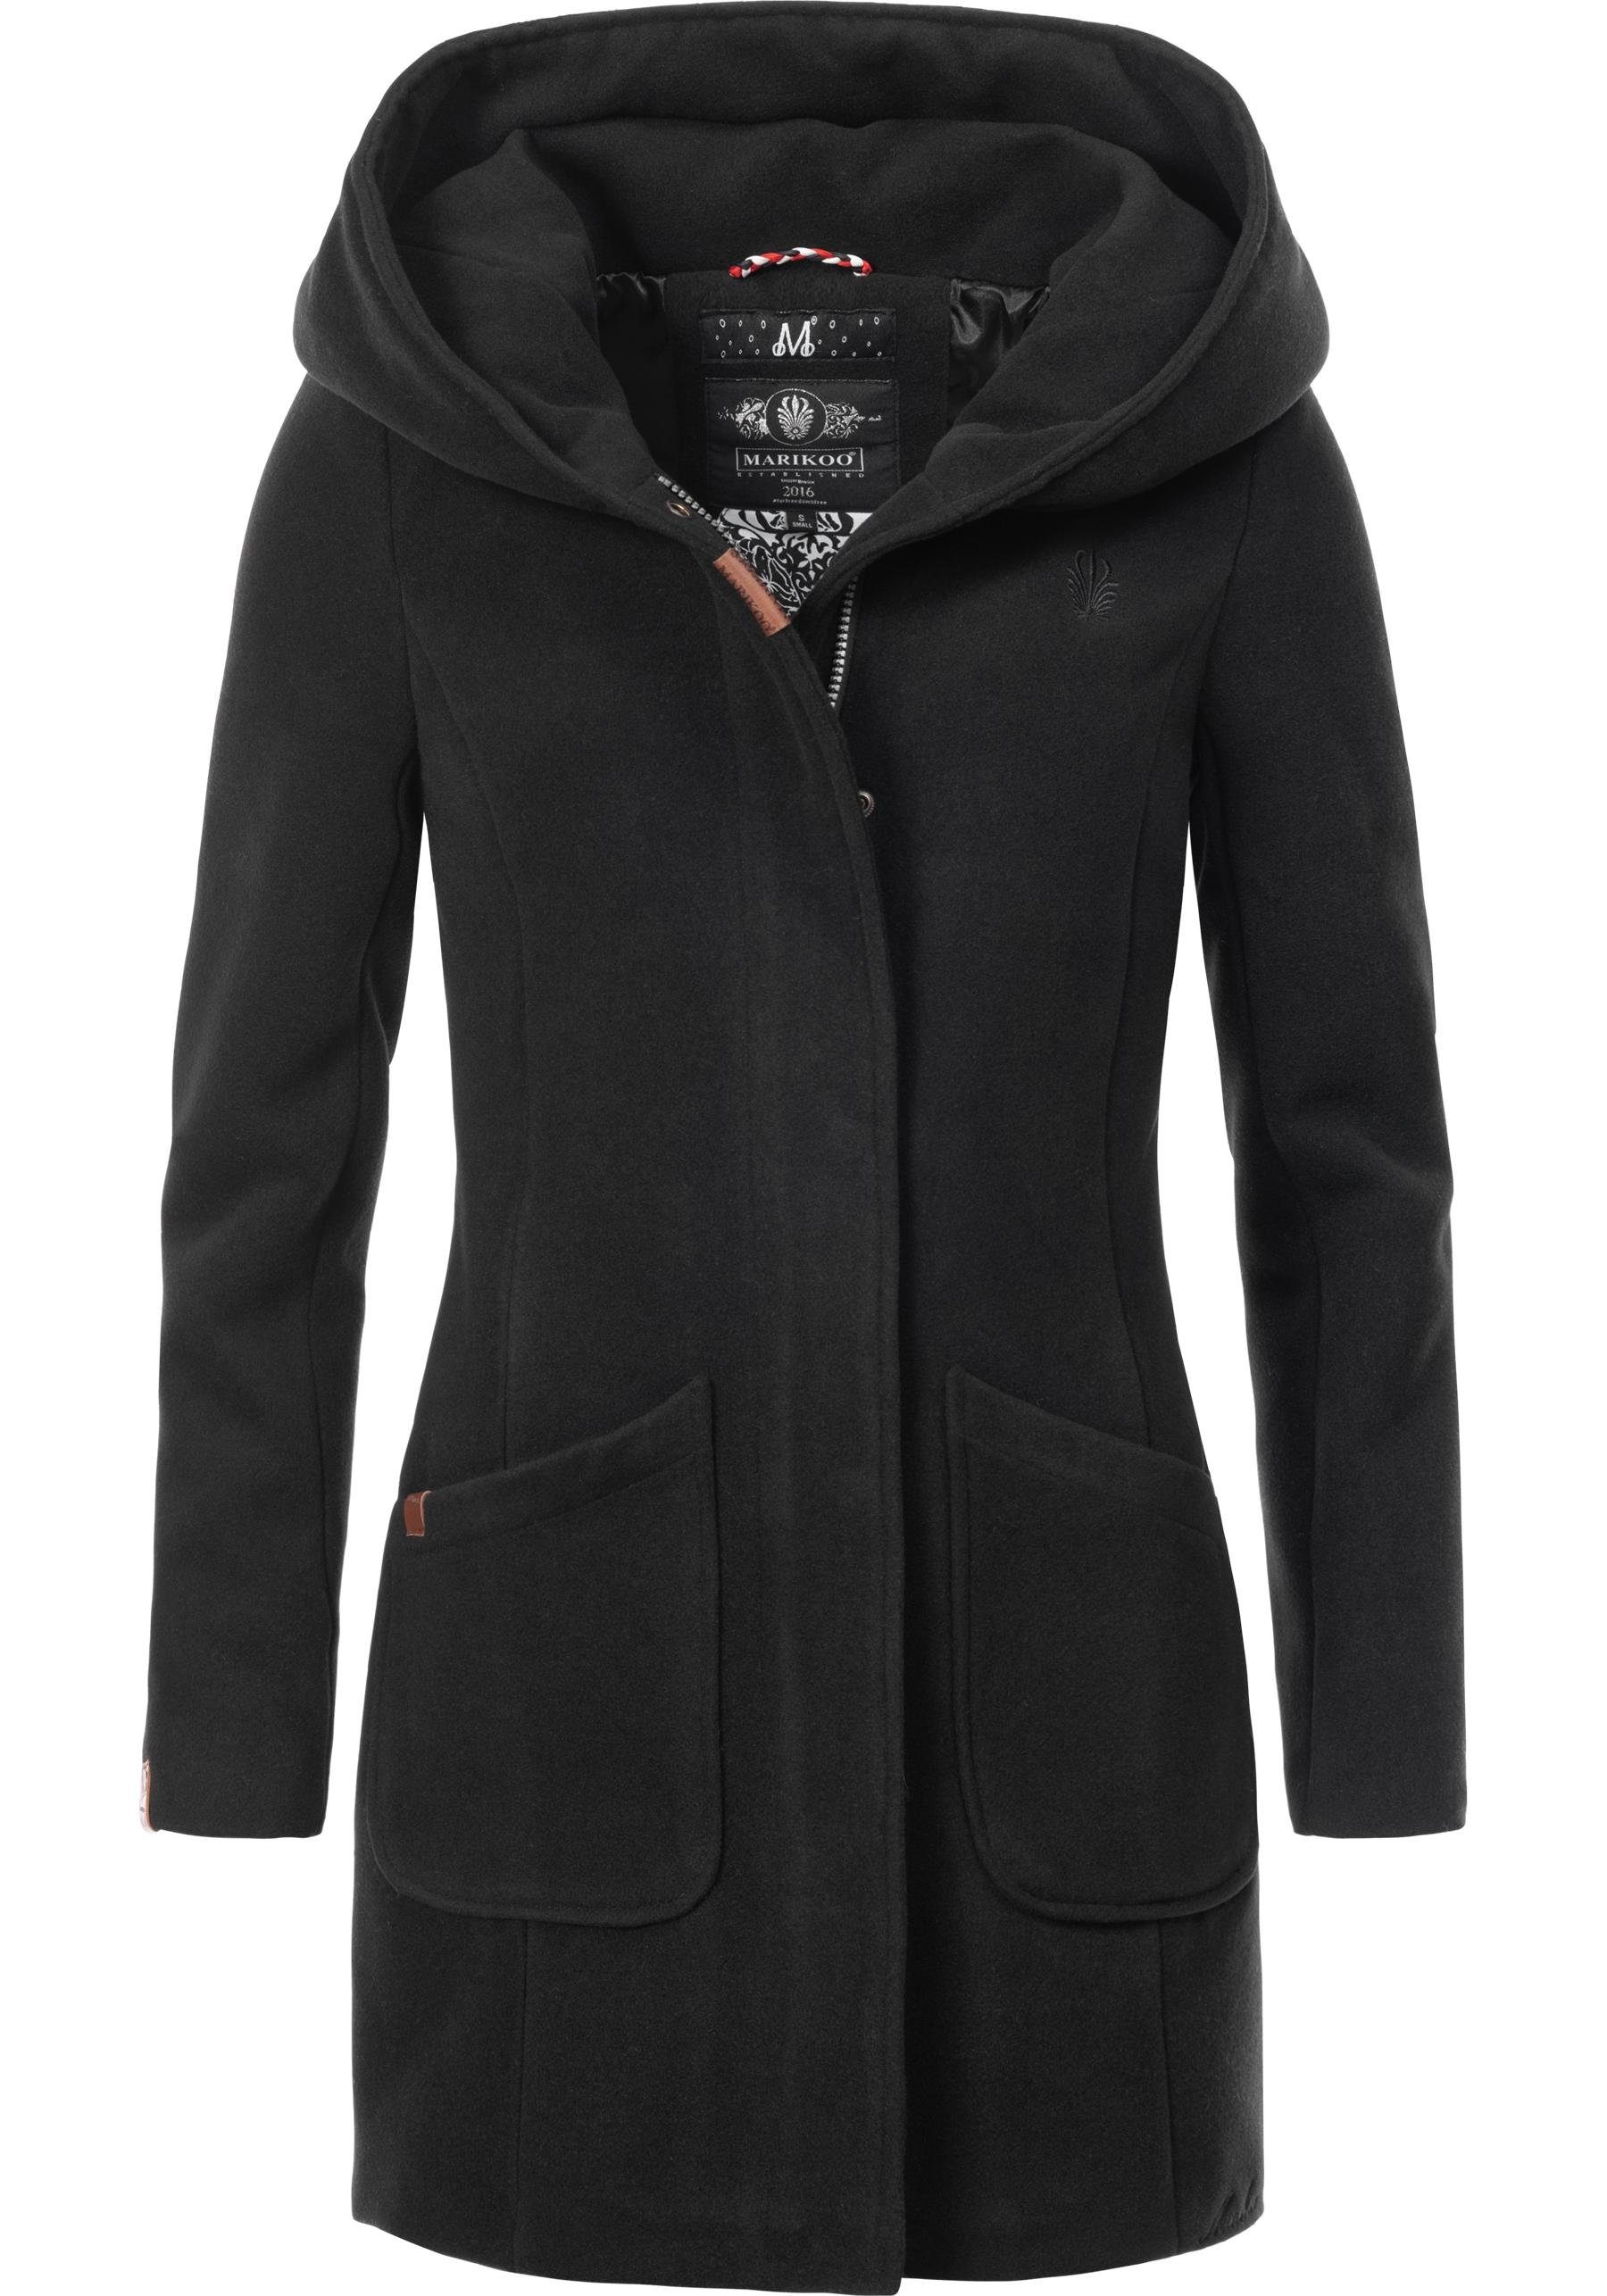 Marikoo Wintermantel Maikoo hochwertiger Mantel mit großer Kapuze schwarz